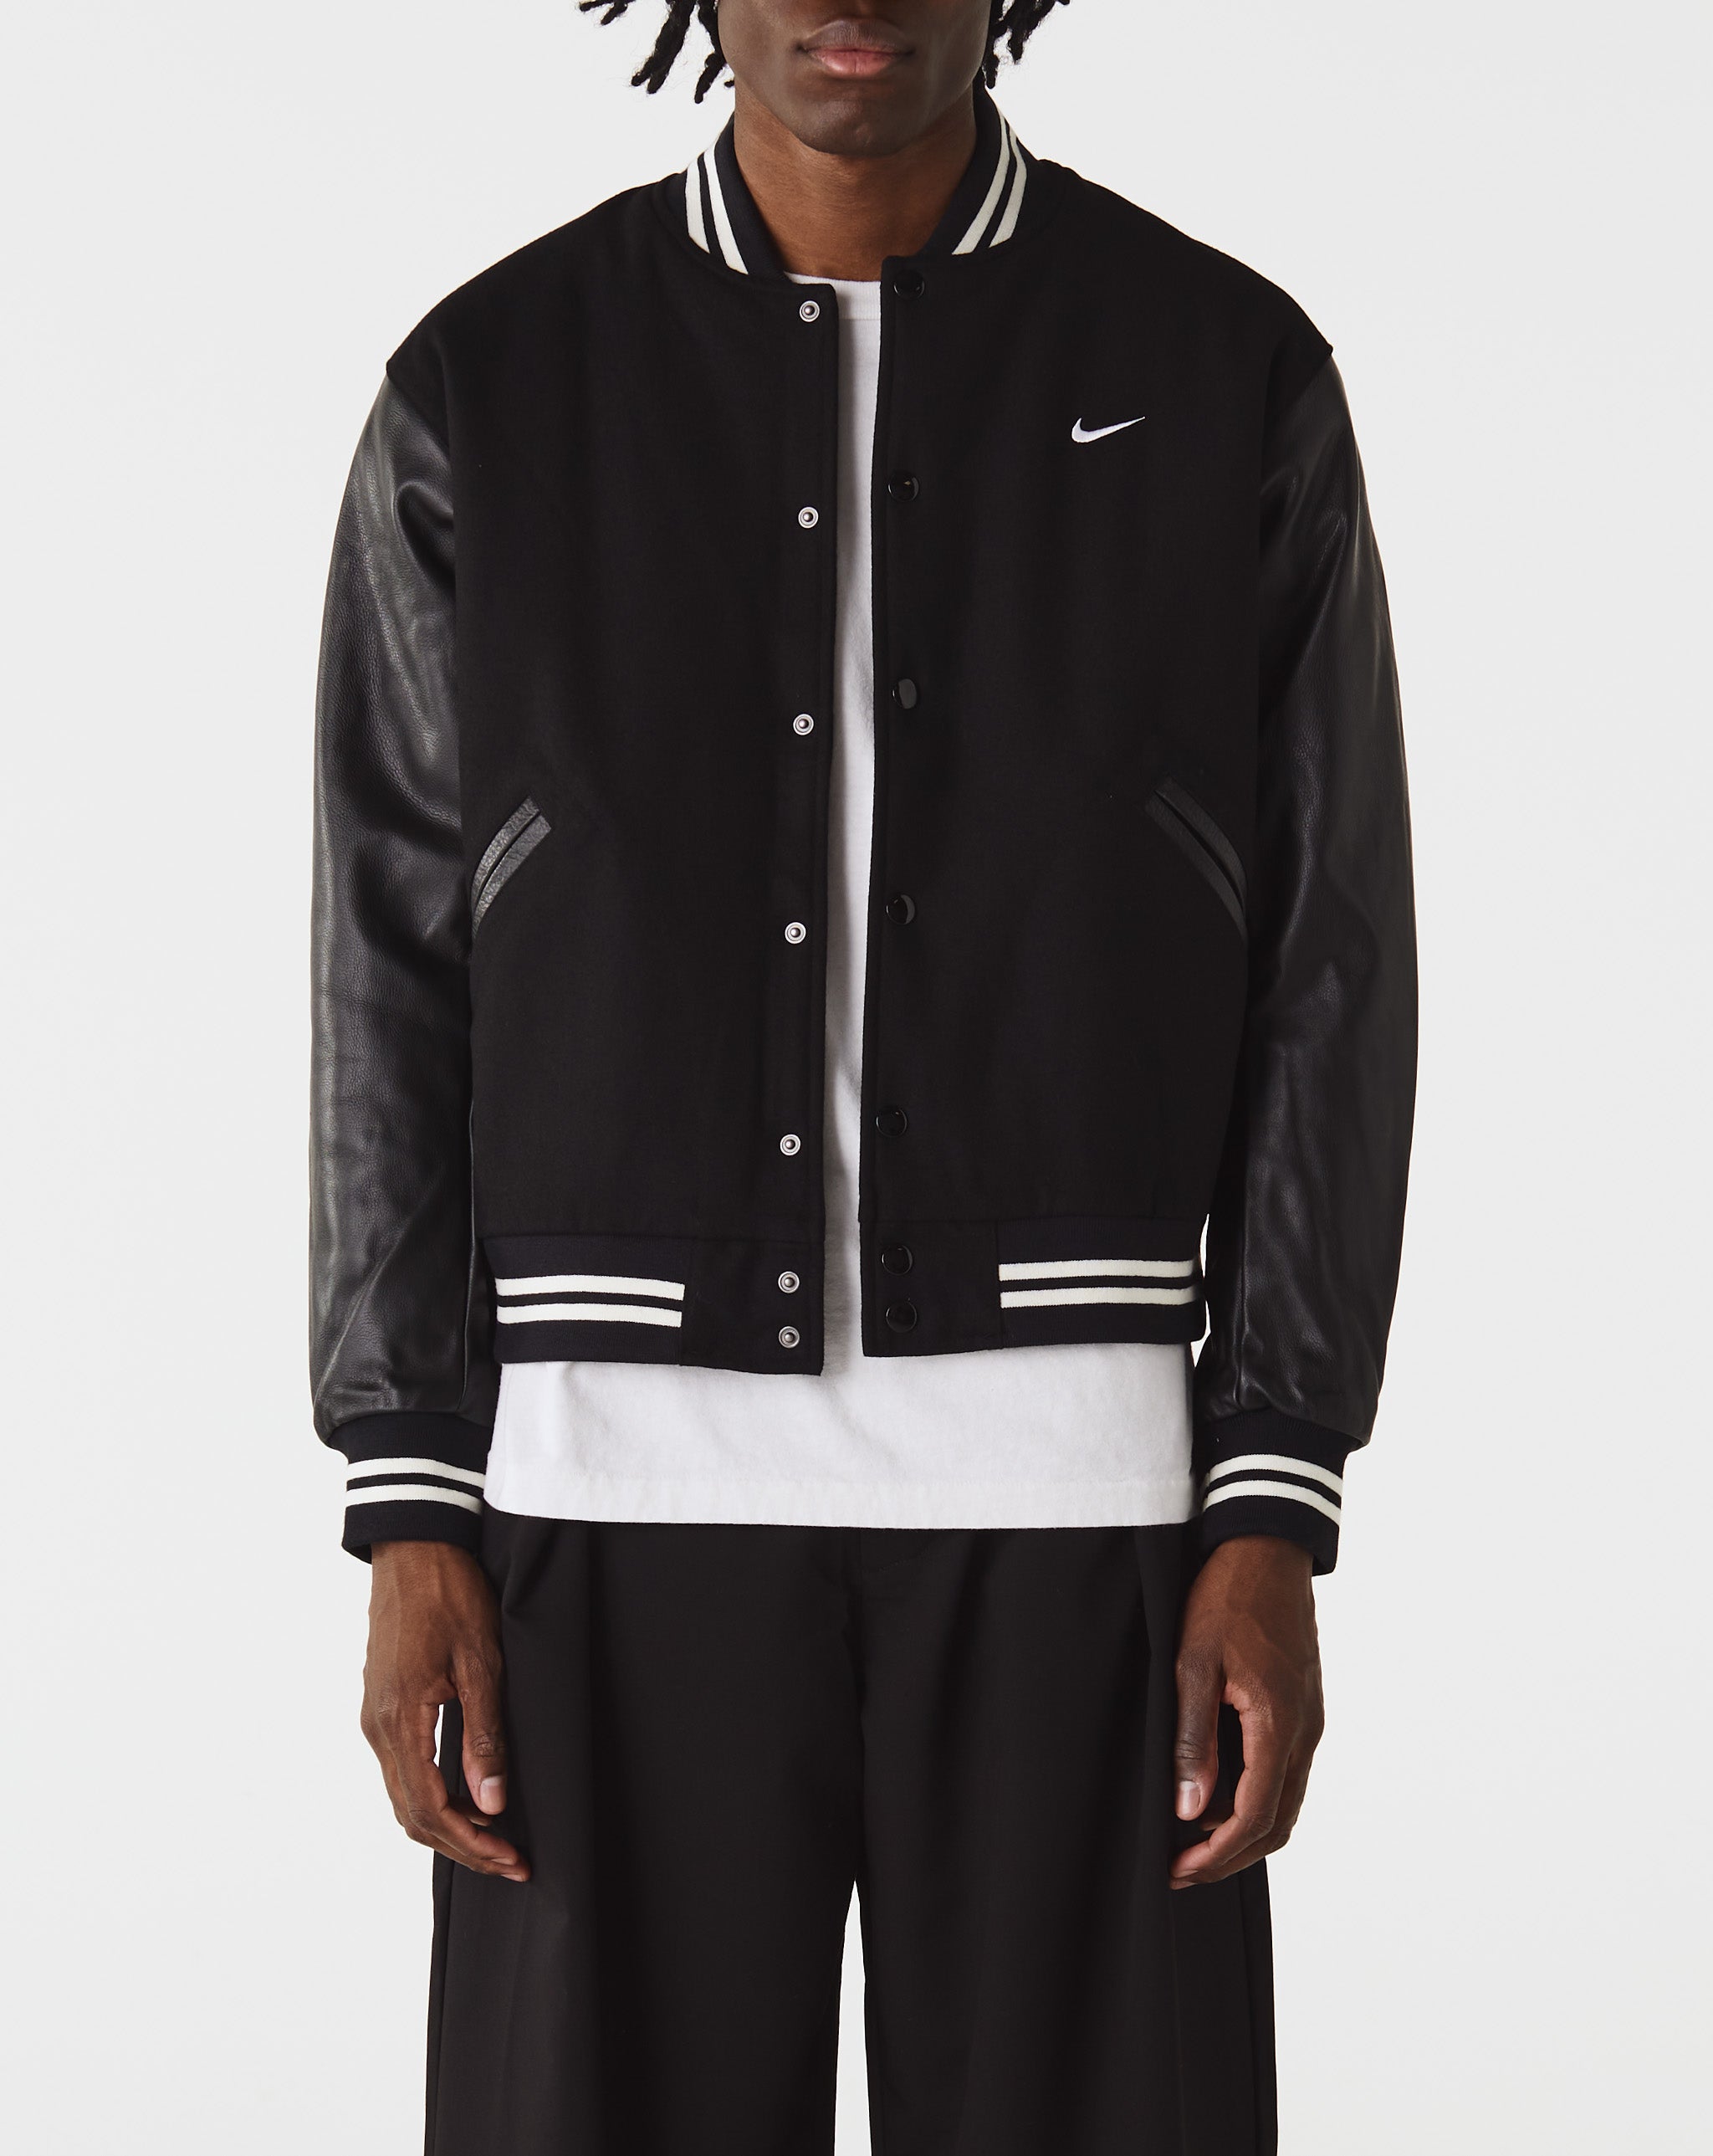 Nike Nike Authentics Varsity Jacket  - Cheap Urlfreeze Jordan outlet